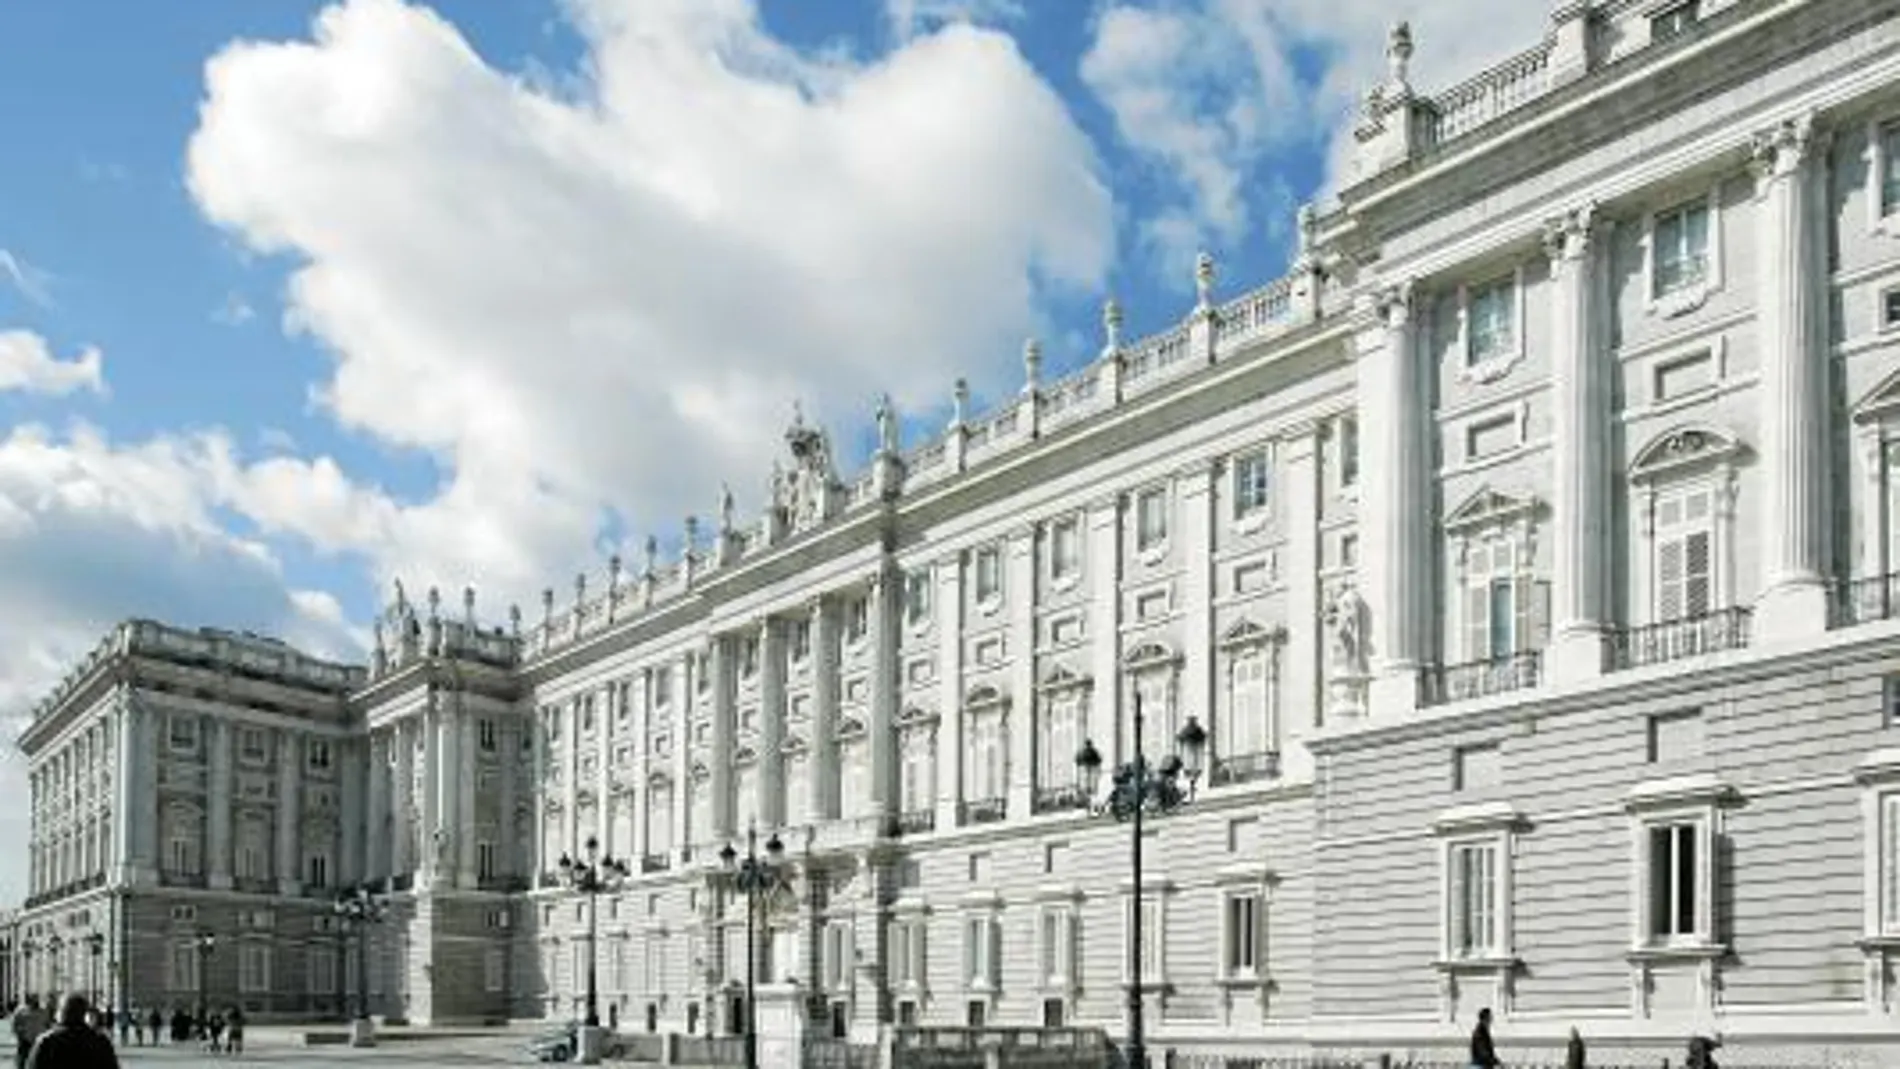 La recopilación incluye desde edificaciones de reyes, como el Palacio Real, a viviendas modestas